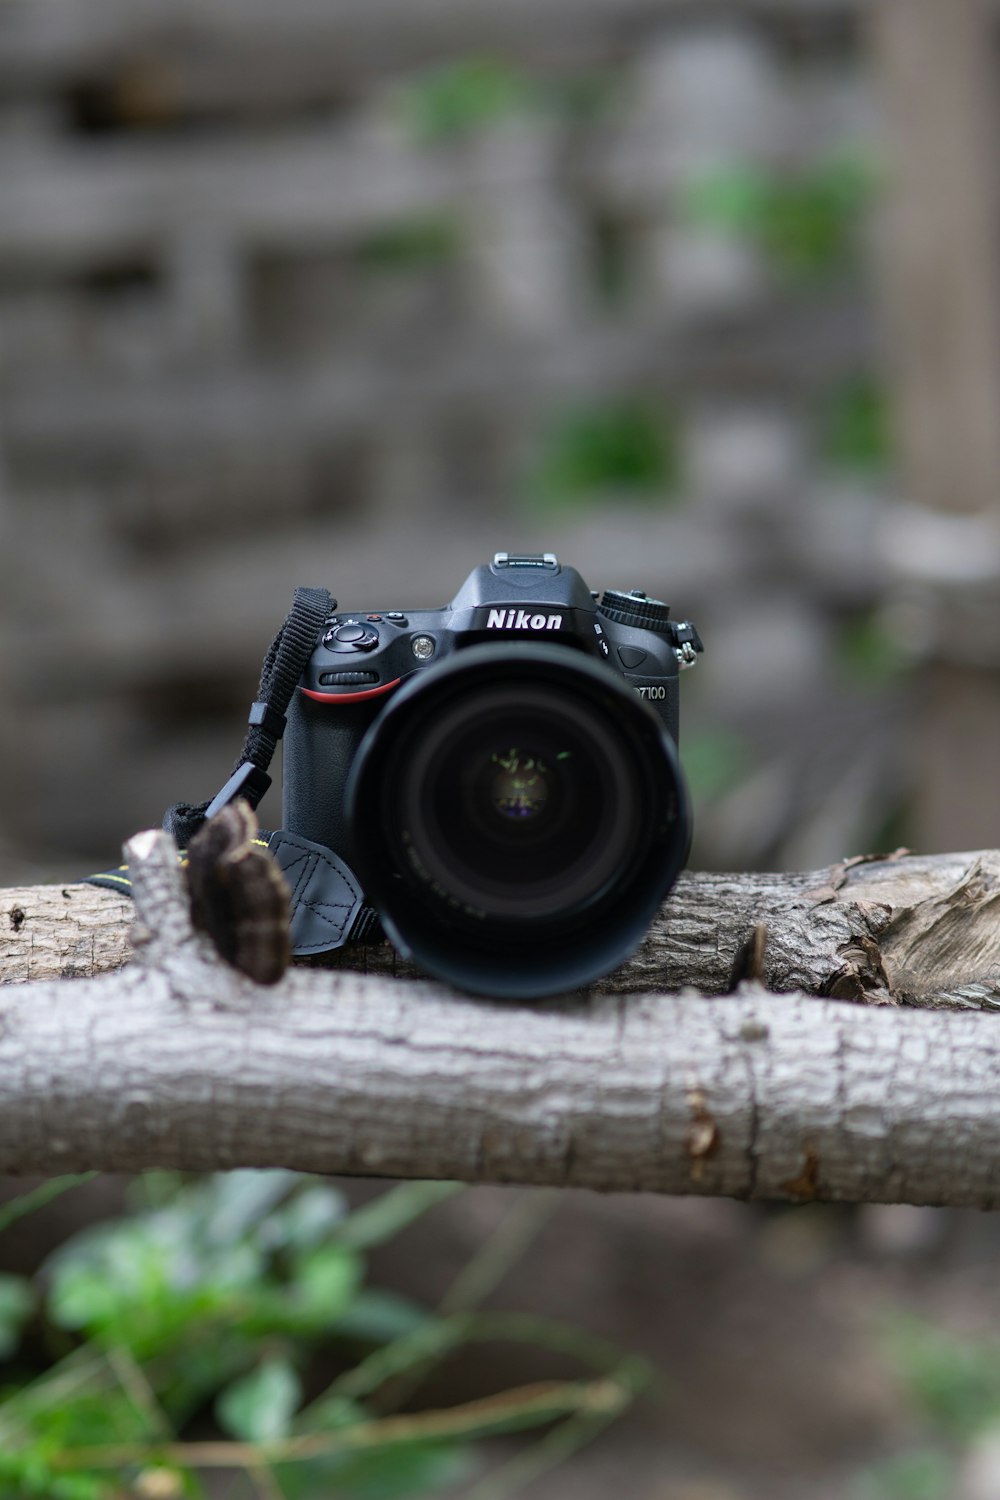 Fotocamera reflex digitale Nikon nera su tronco di legno marrone